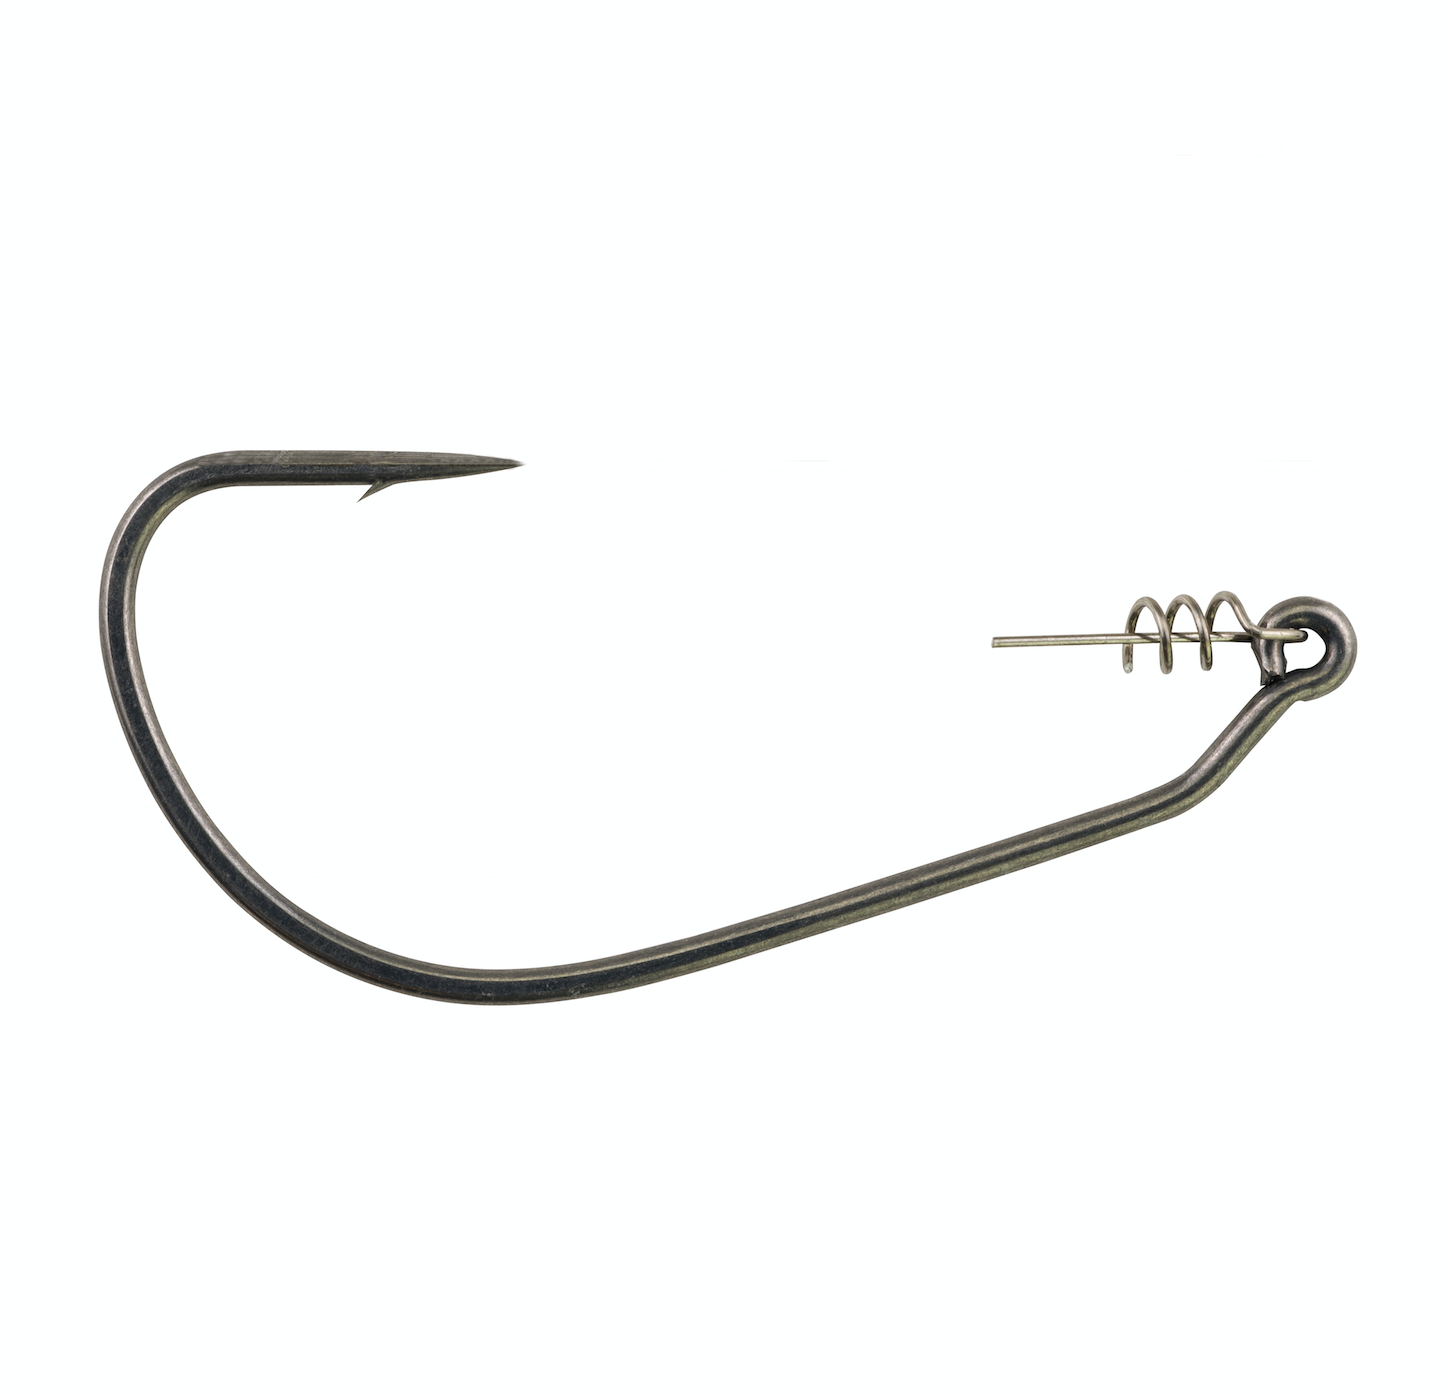 Fusion19âs Swimbait hook is the ideal soft-plastic hook and features a center pin screw lock attachment to keep the bait secured in position to produce the best swimming action possible. Available in 3/0 through 7/0 sizes and four hooks to a package for $3.99.